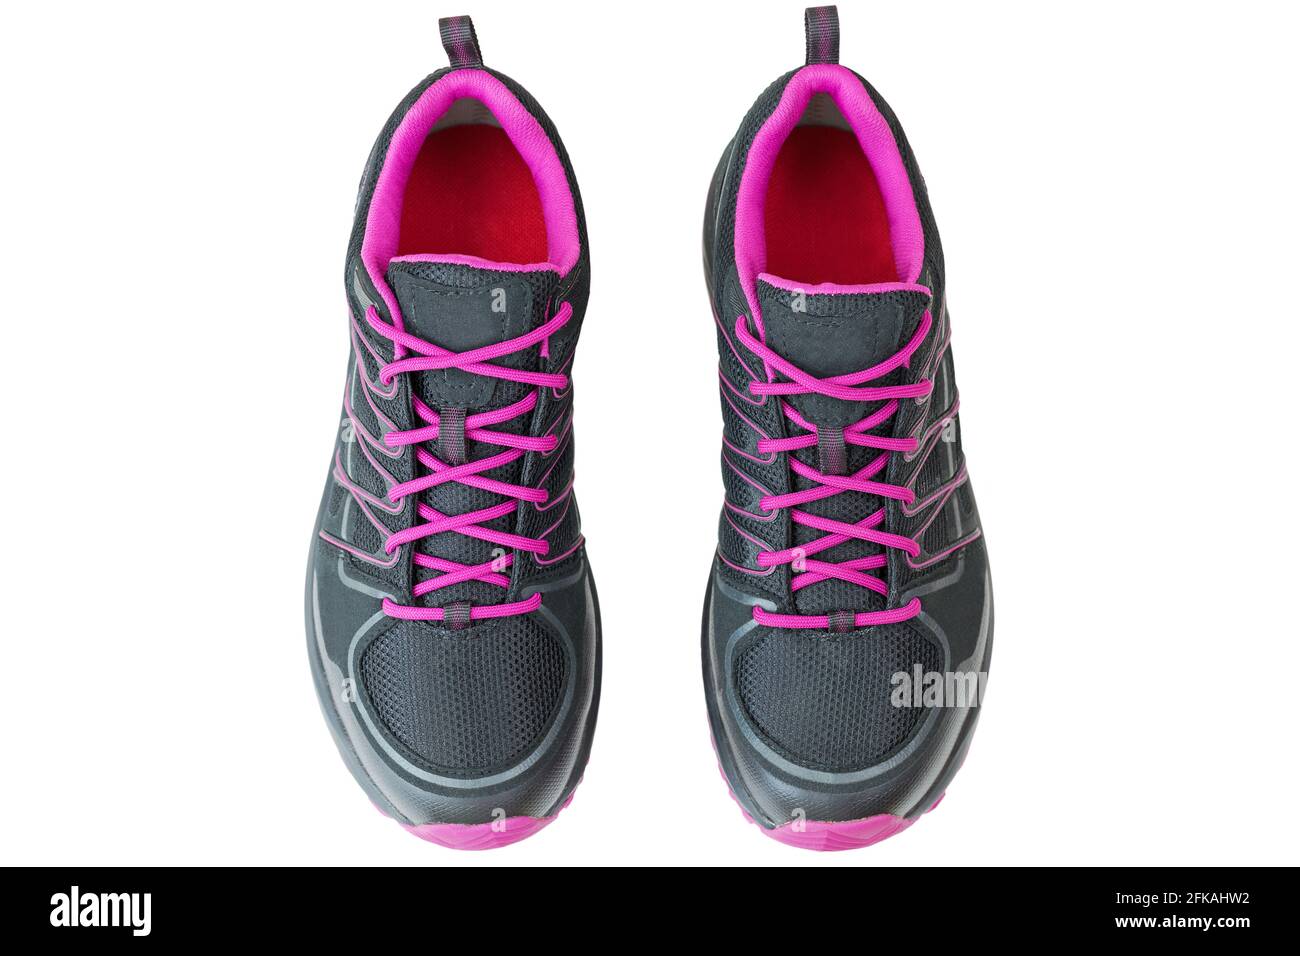 Vue de dessus de chaussures de randonnée légères chaussures pour femmes en noir et rose, isolées sur fond blanc Banque D'Images